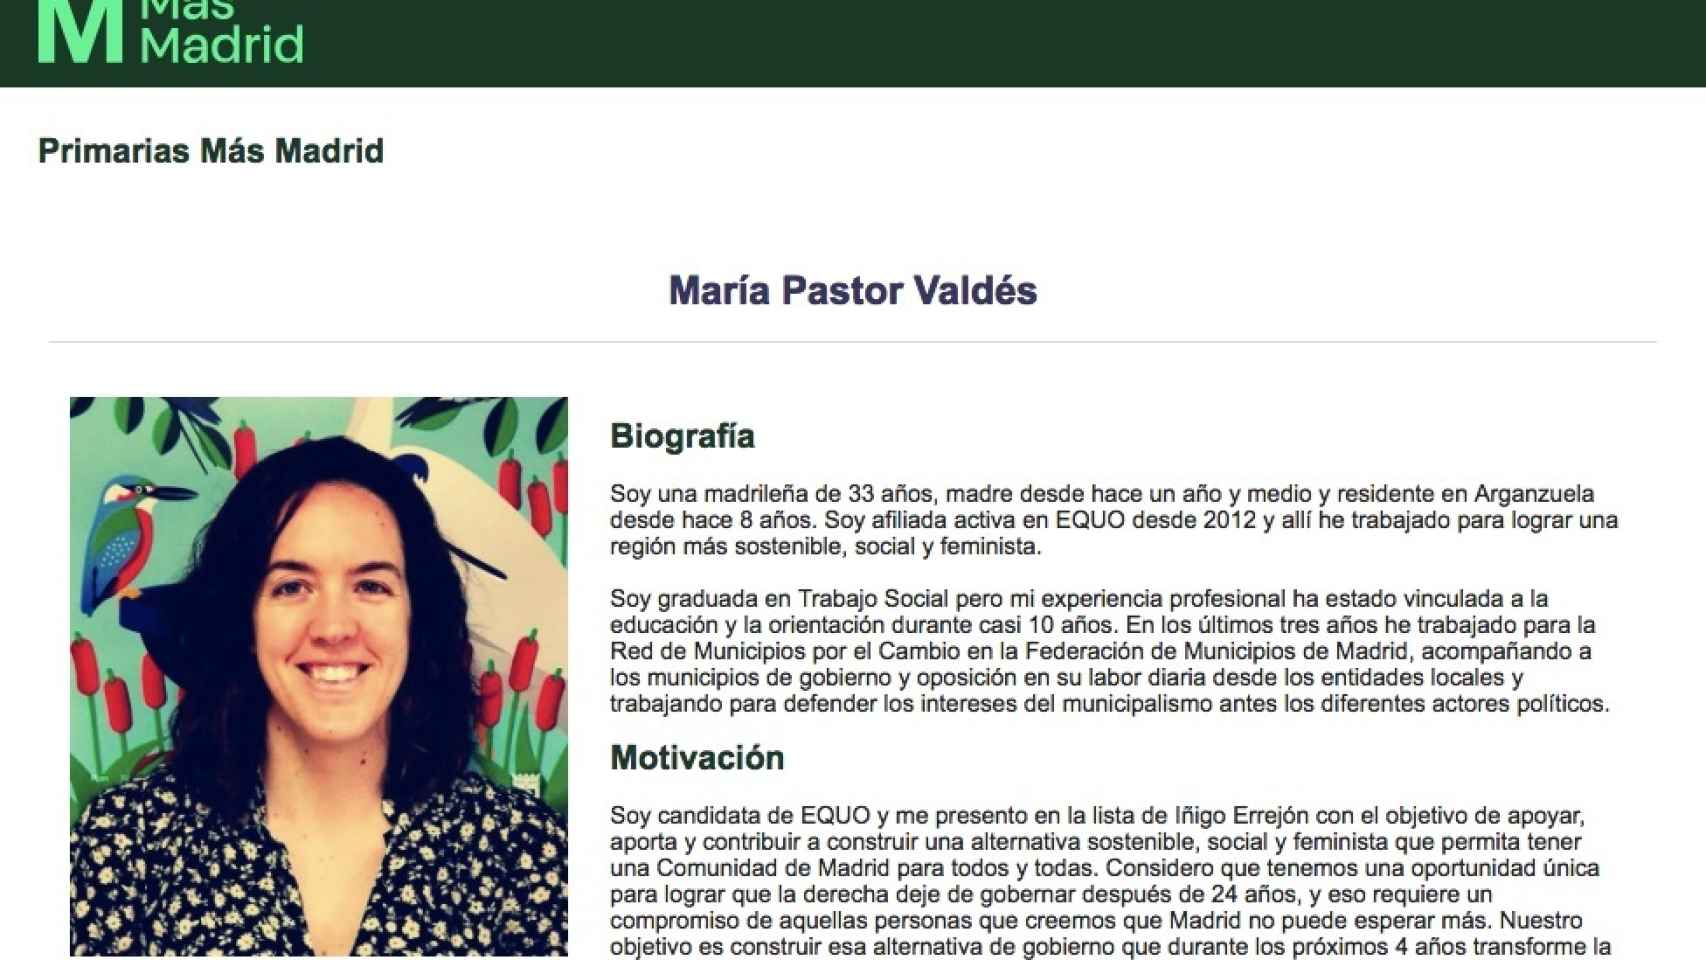 Ficha de María Pastor Valdés en la web de Más Madrid.